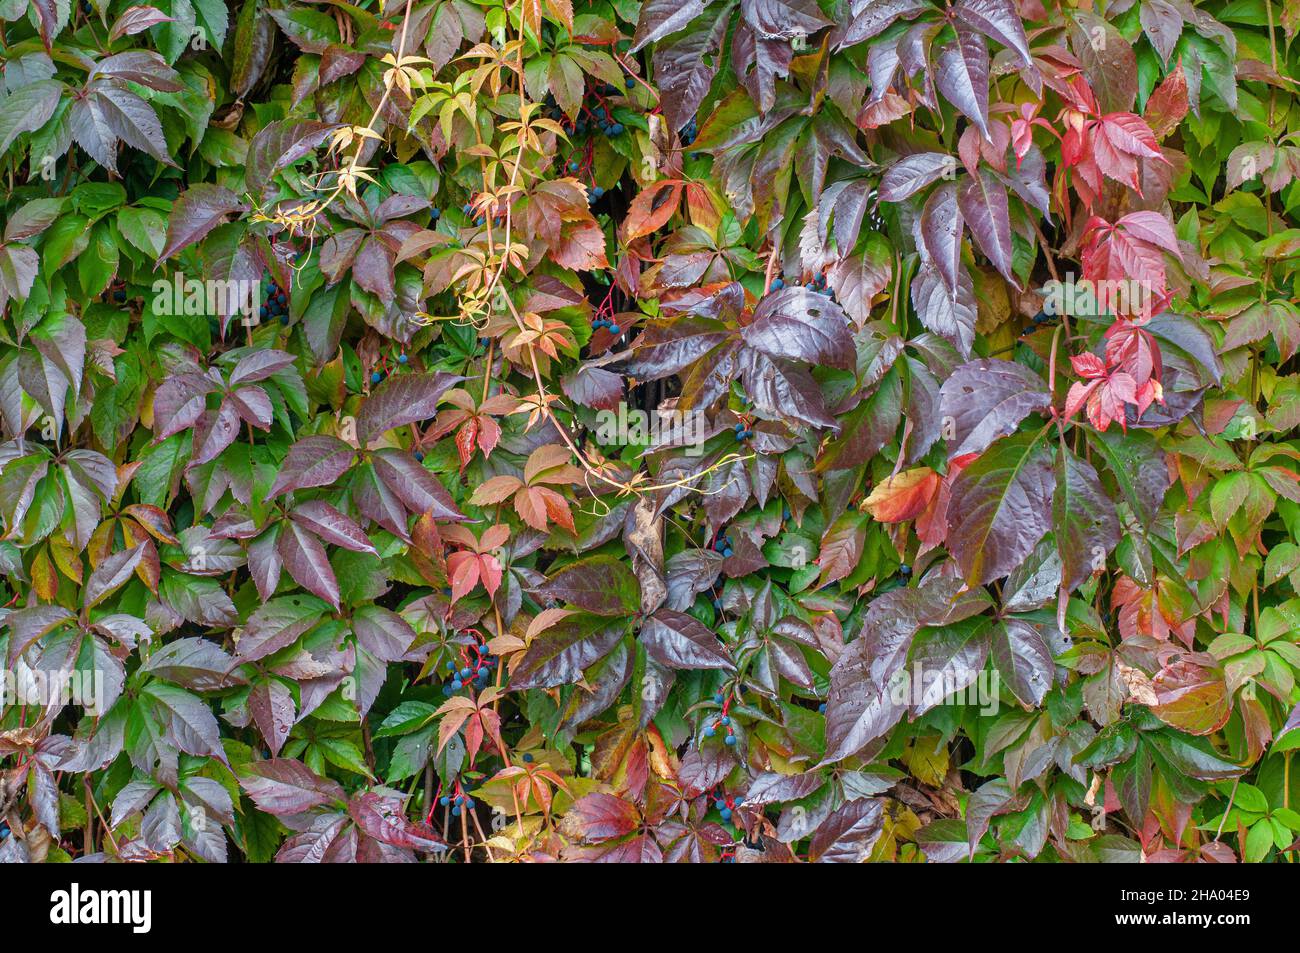 Hojas coloridas de una planta de parthenocisus quinquefolia en otoño Foto de stock